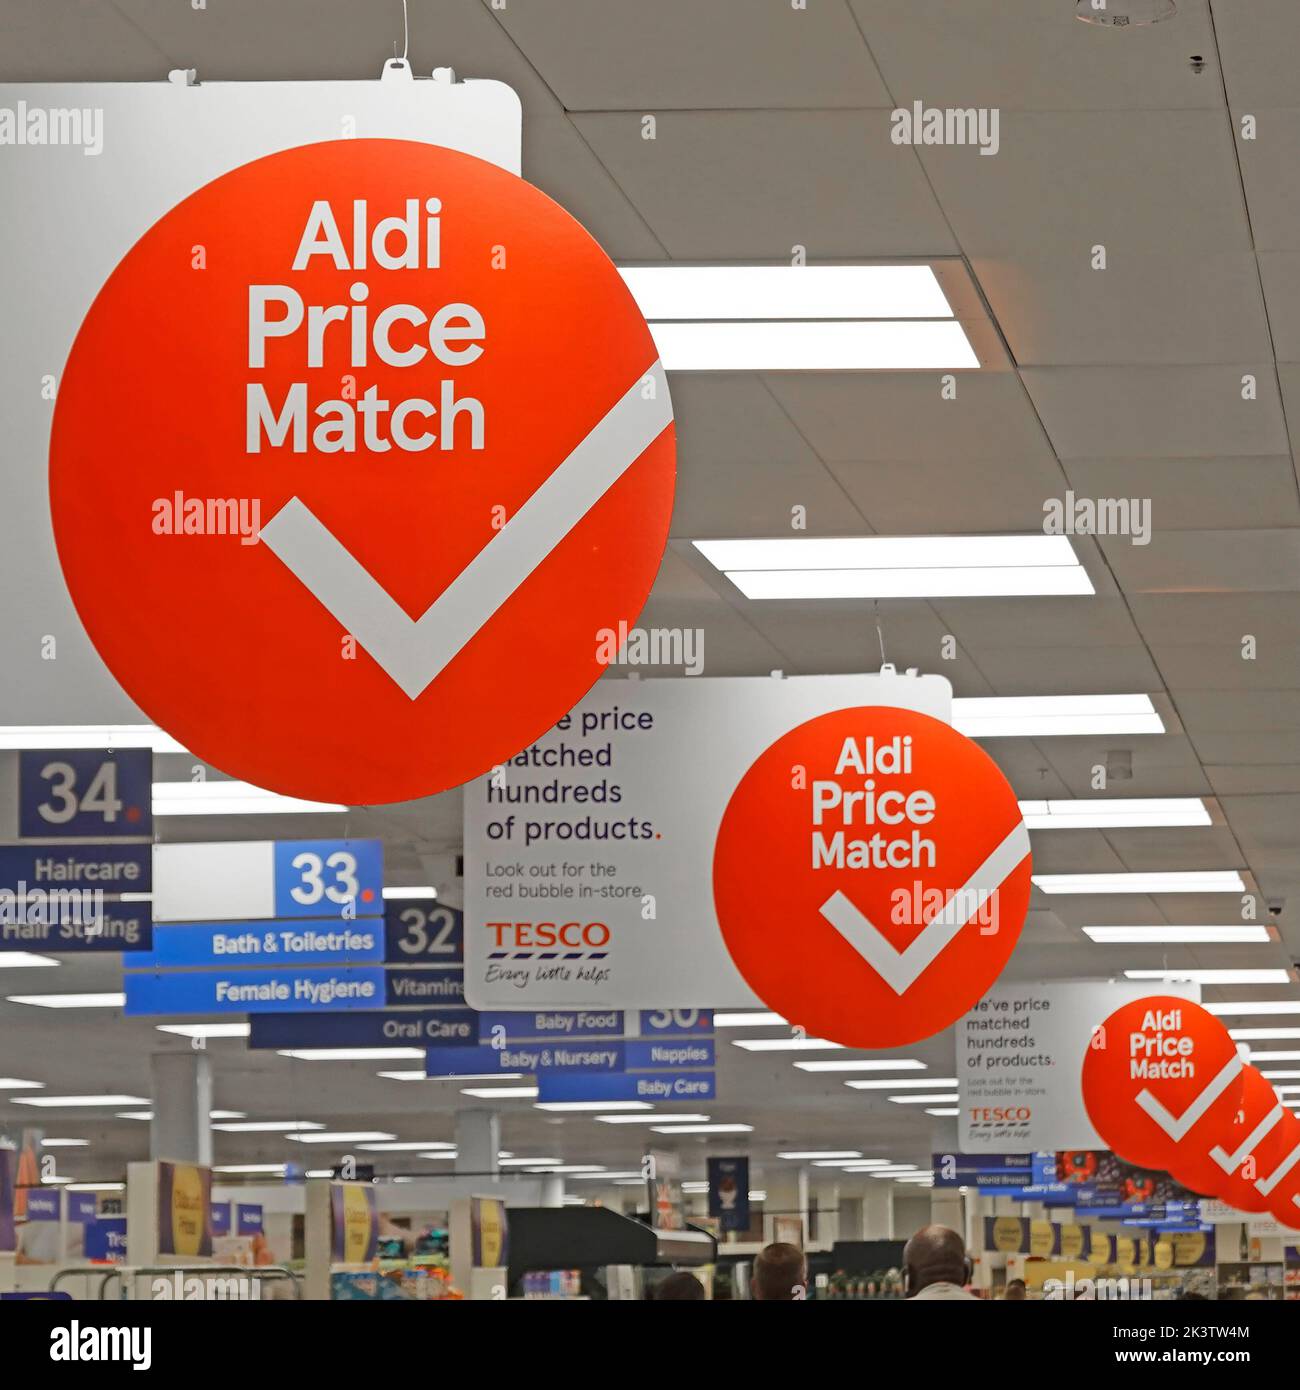 Rond répétitif Aldi affiches publicitaires du même prix accrochées entre les panneaux d'éclairage au-dessus du supermarché Tesco allée de shopping intérieur Essex Angleterre Royaume-Uni Banque D'Images